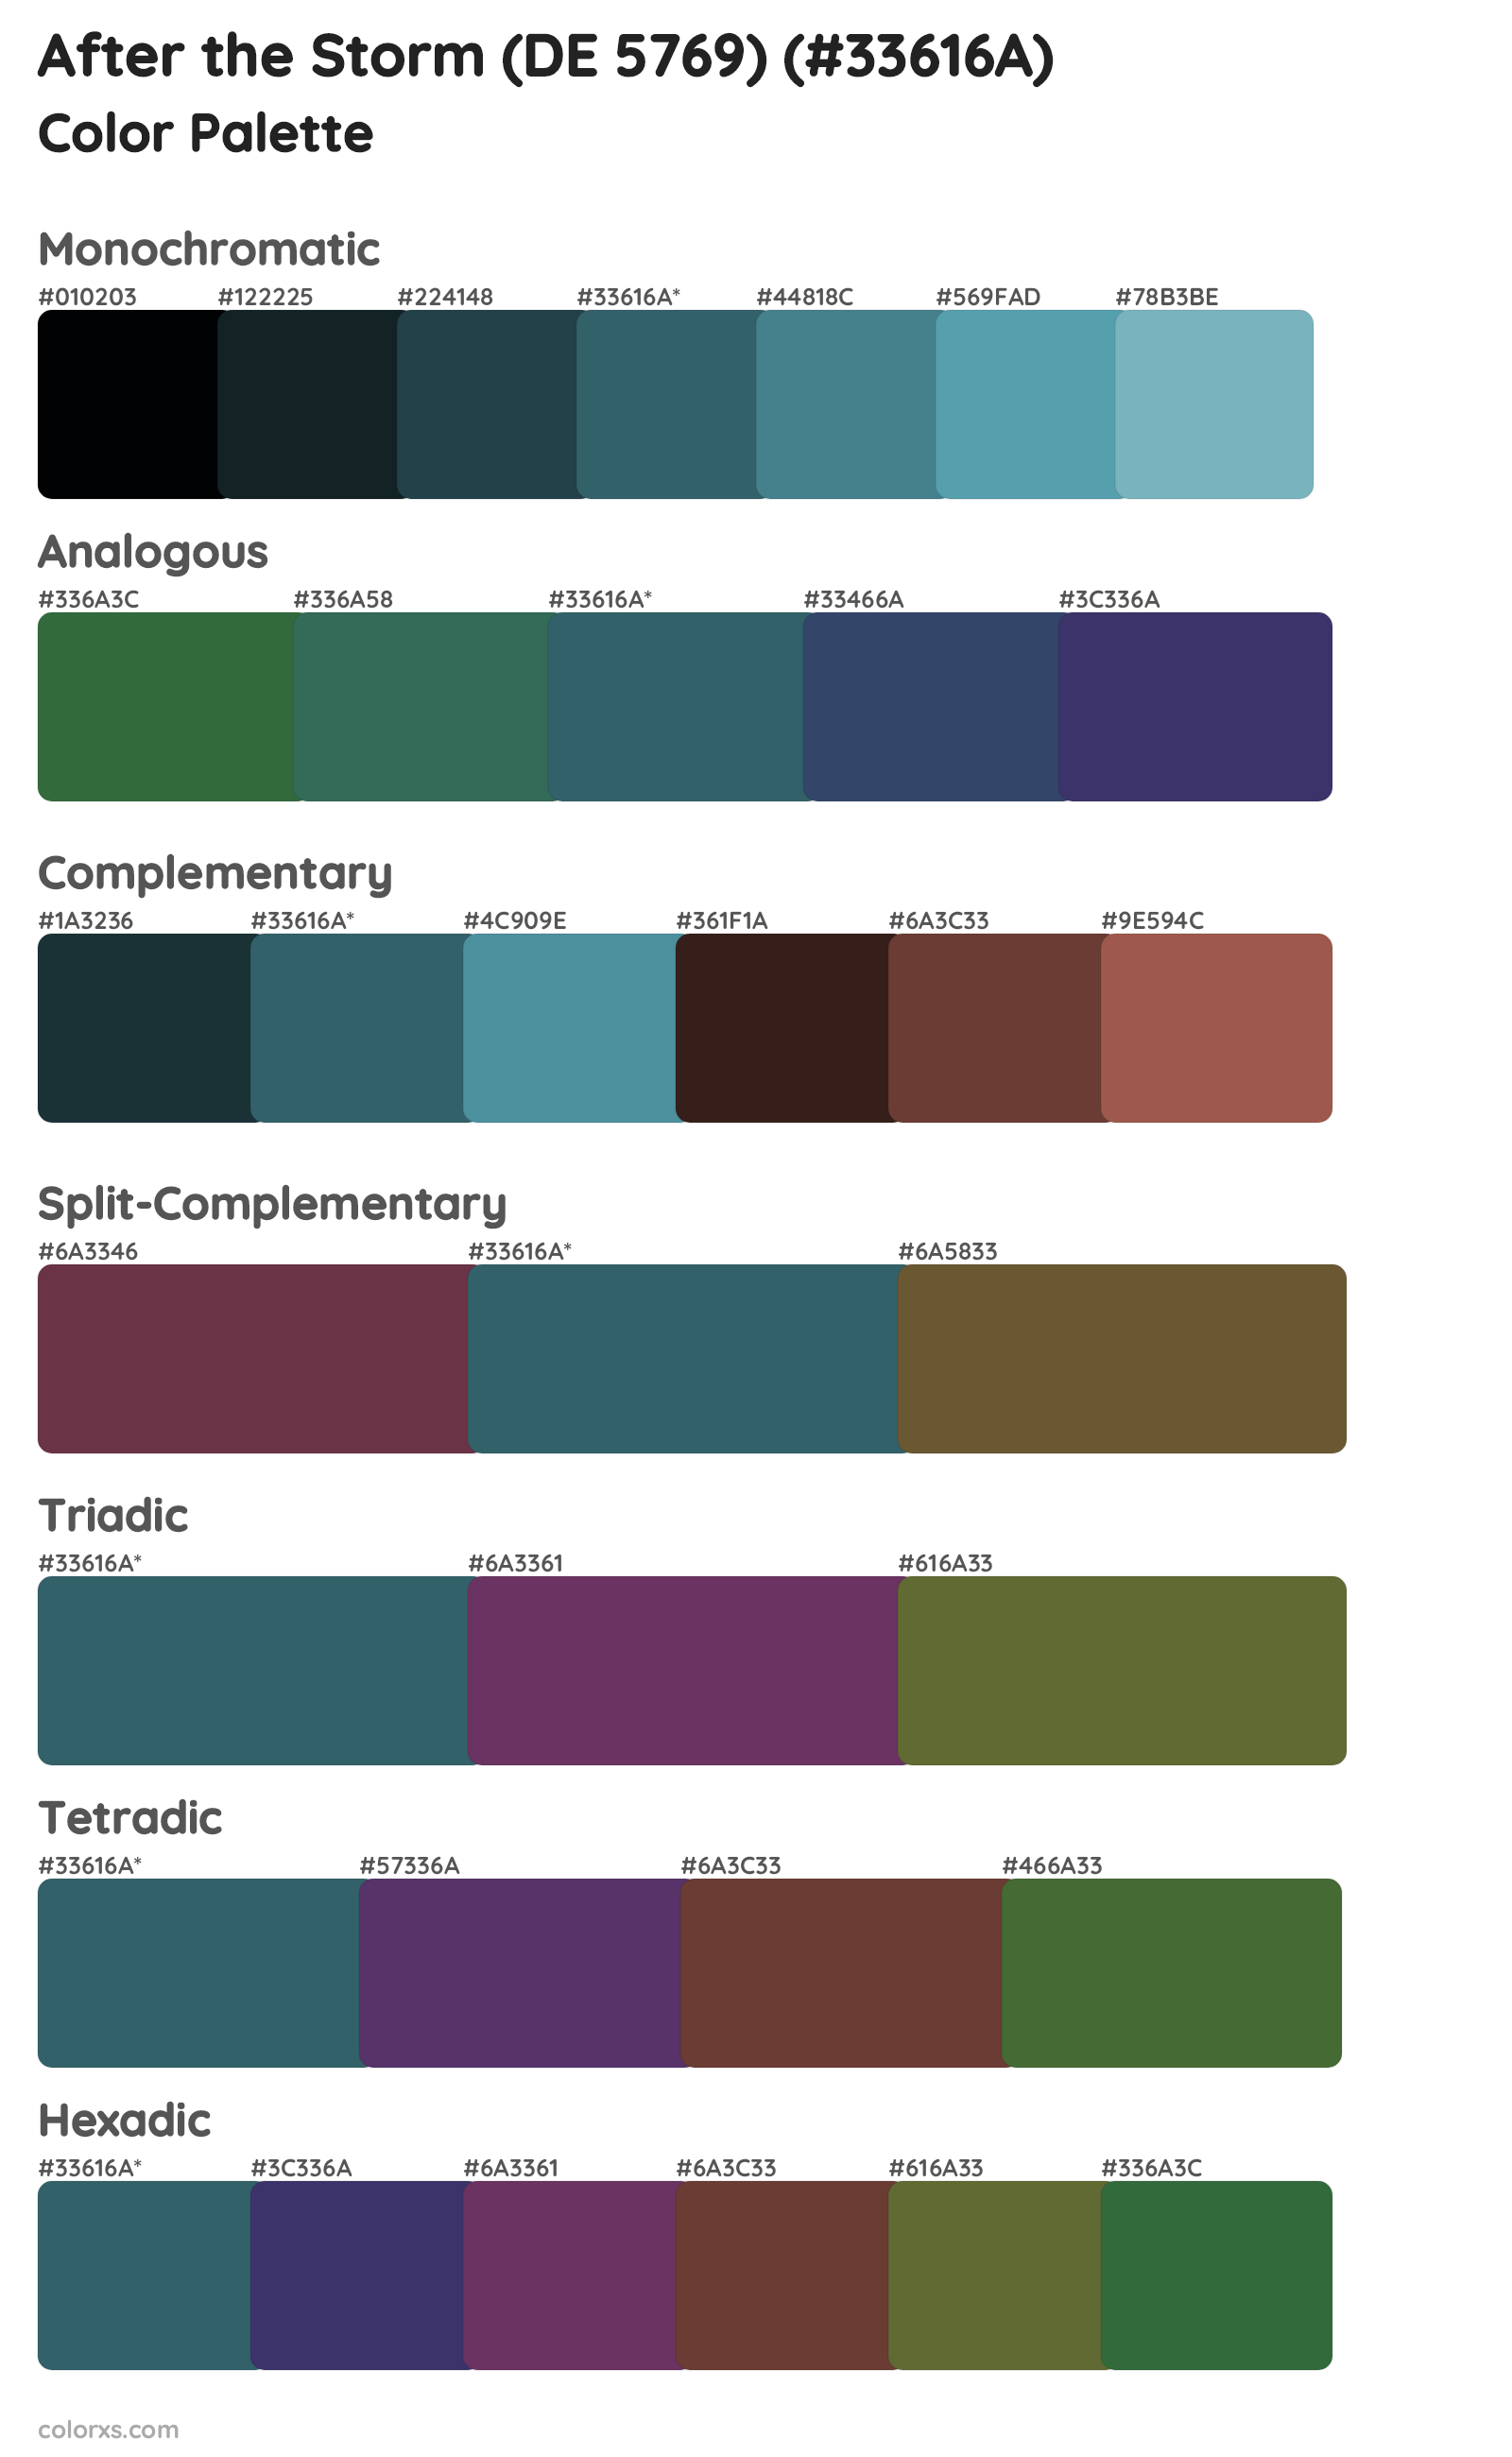 After the Storm (DE 5769) Color Scheme Palettes